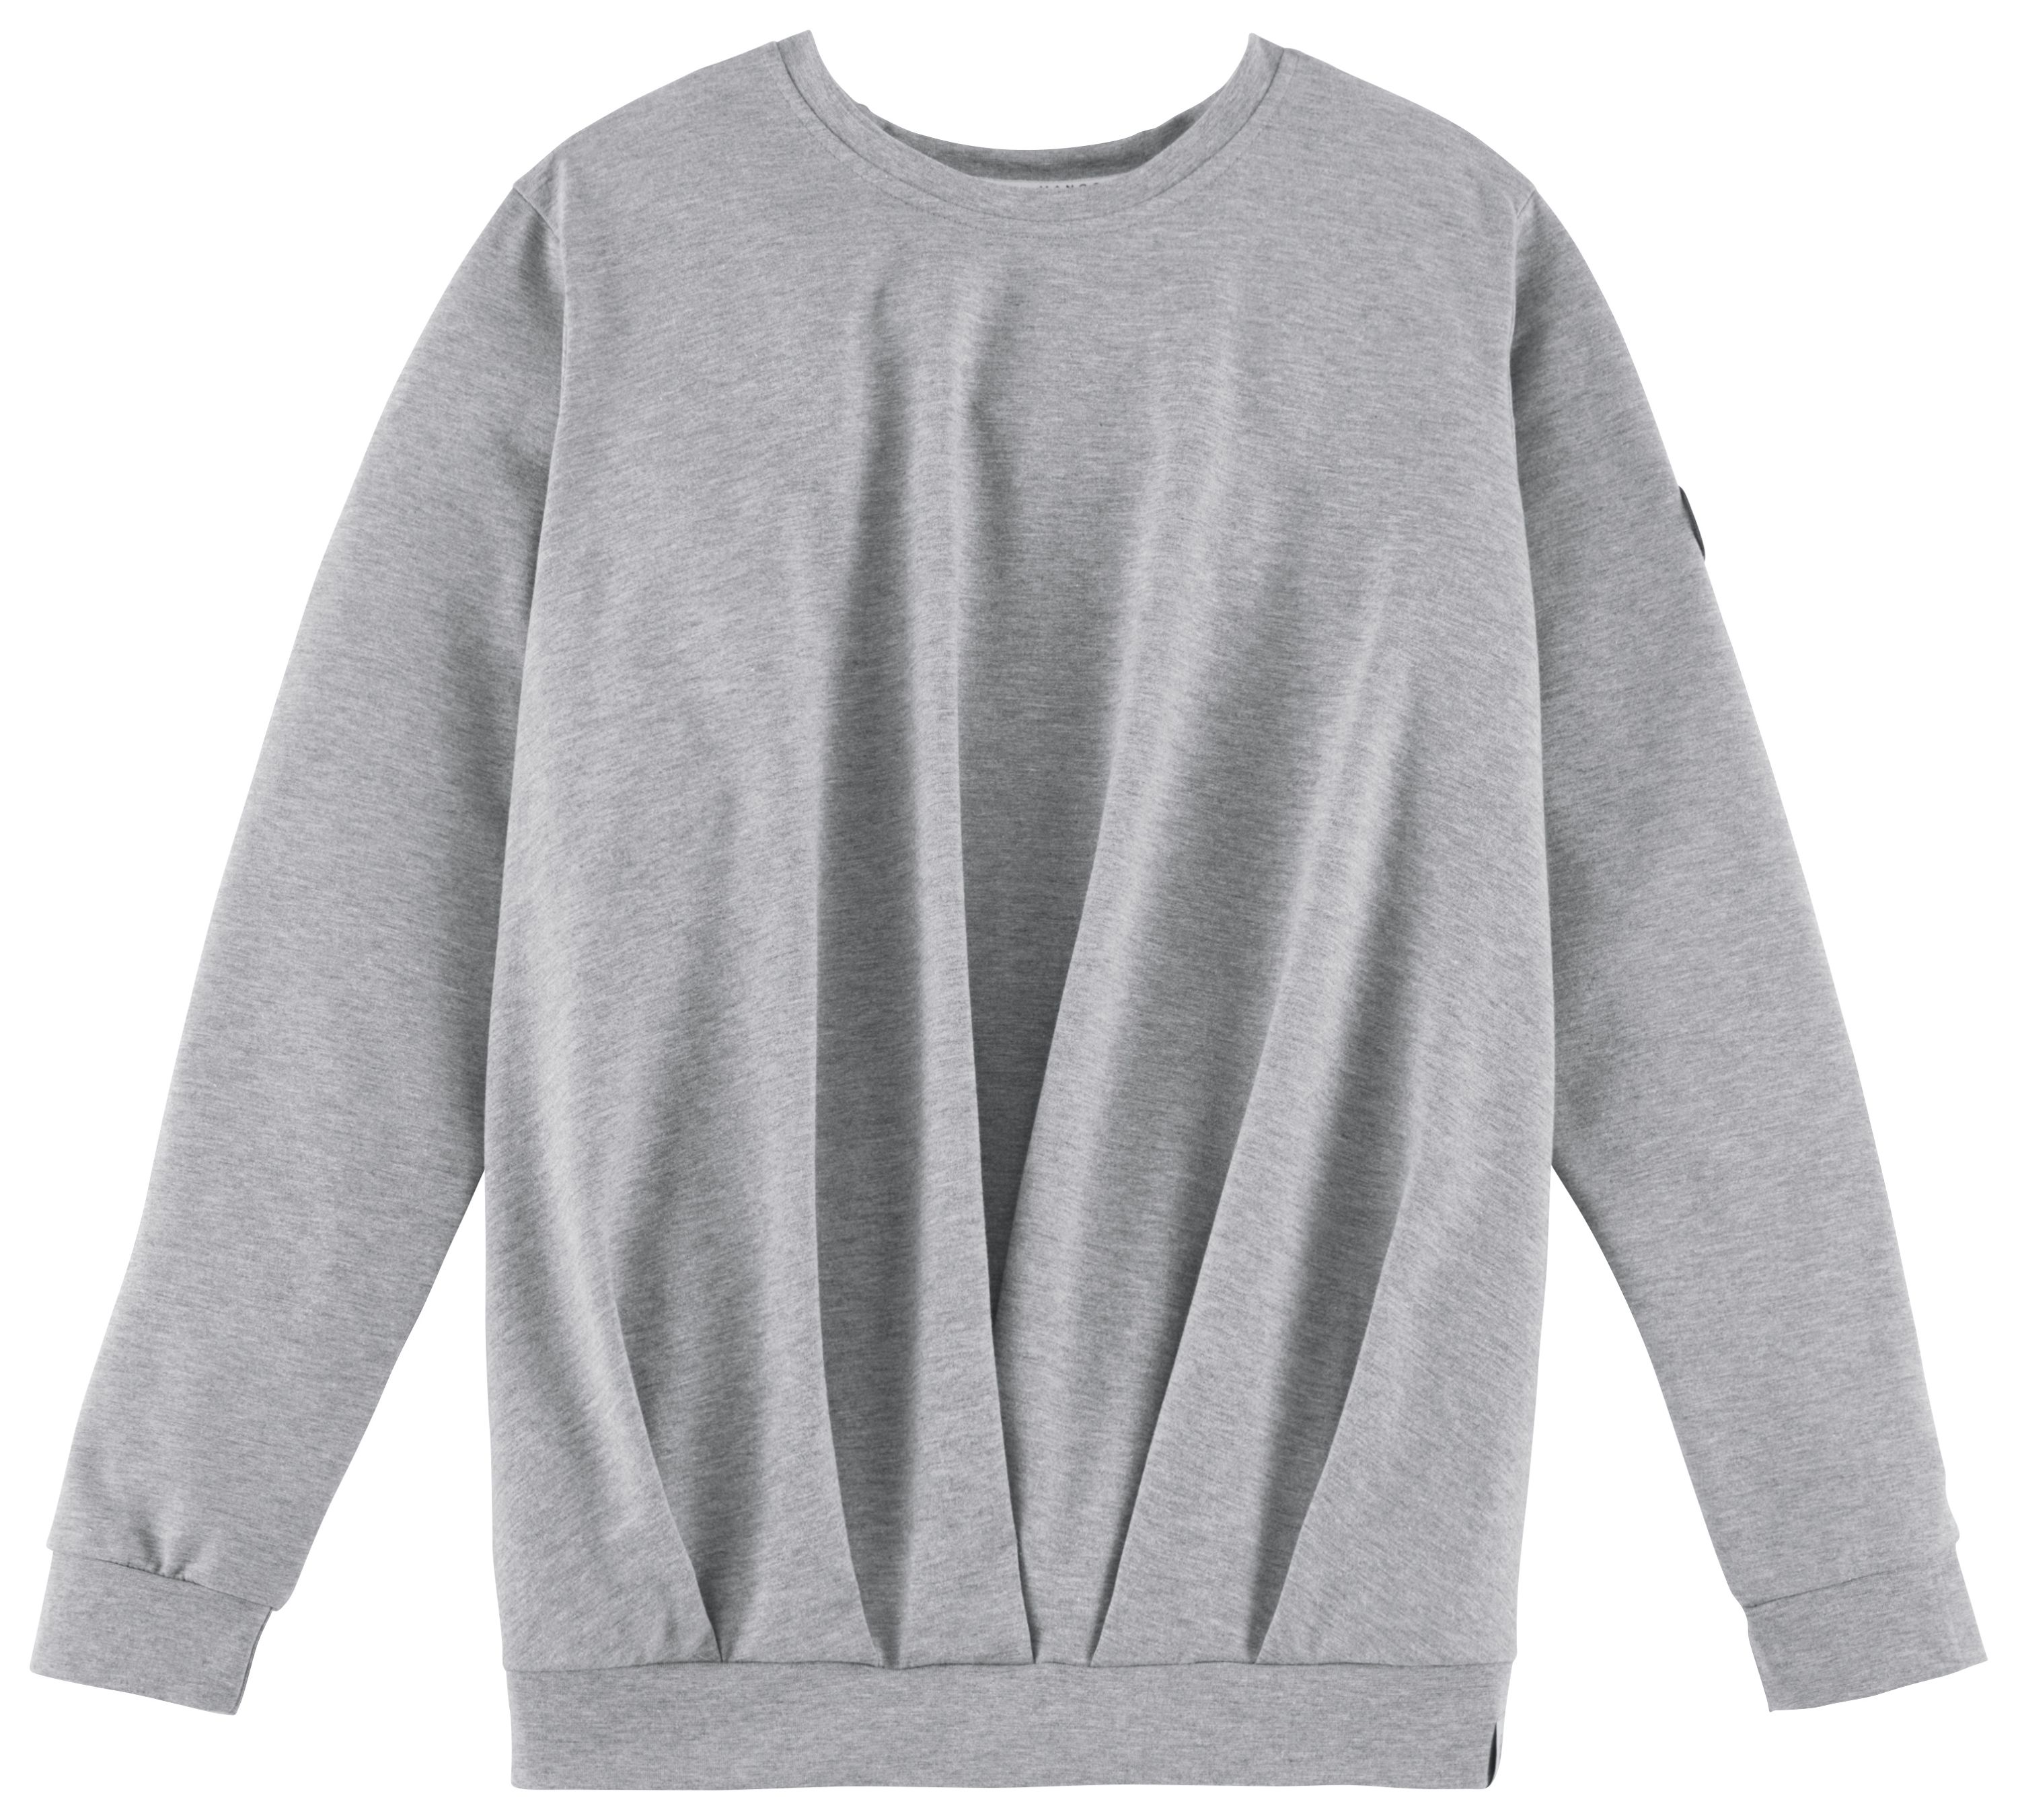 Ein graues FancyFriday-Sweatshirt